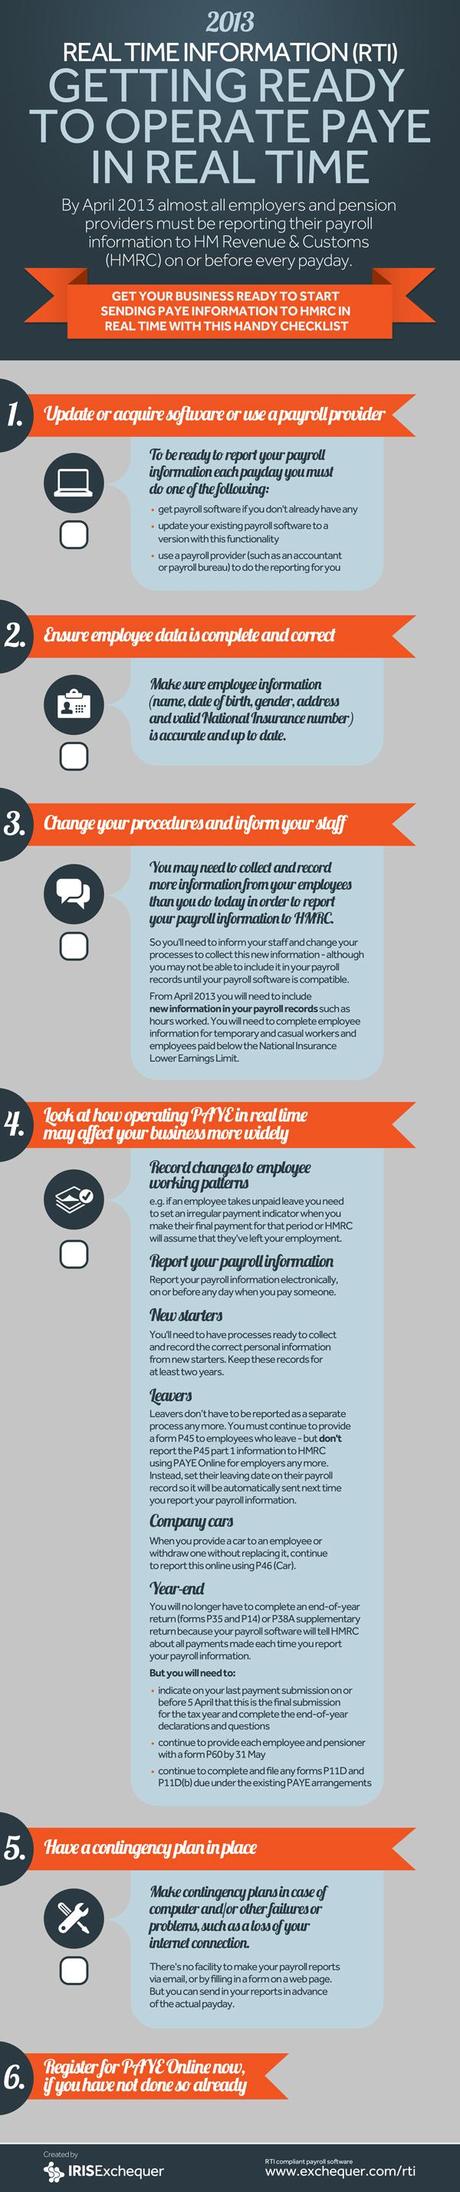 RTI Checklist Infographic